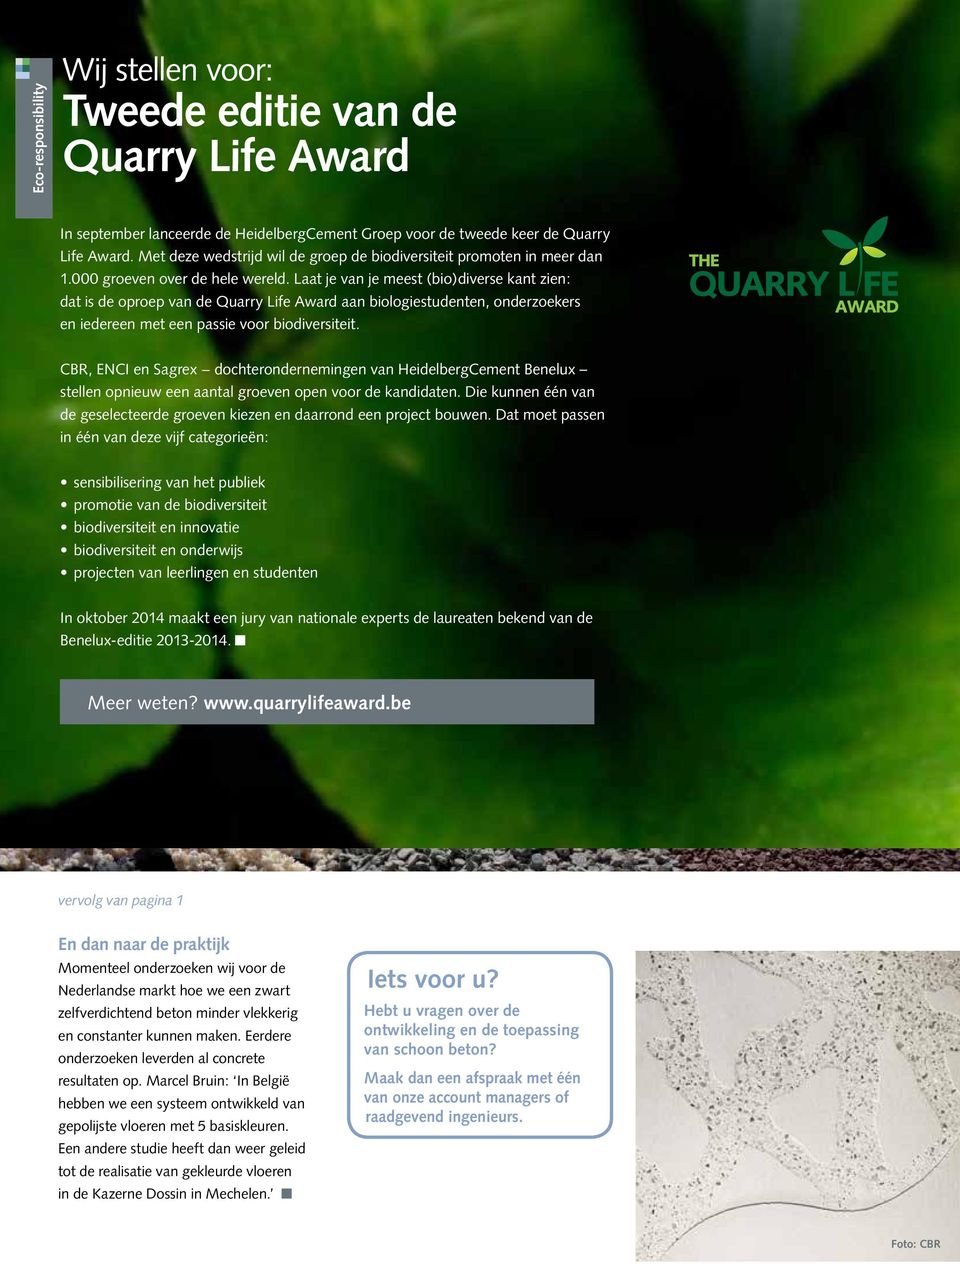 Laat je van je meest (bio)diverse kant zien: dat is de oproep van de Quarry Life Award aan biologiestudenten, onderzoekers en iedereen met een passie voor biodiversiteit.